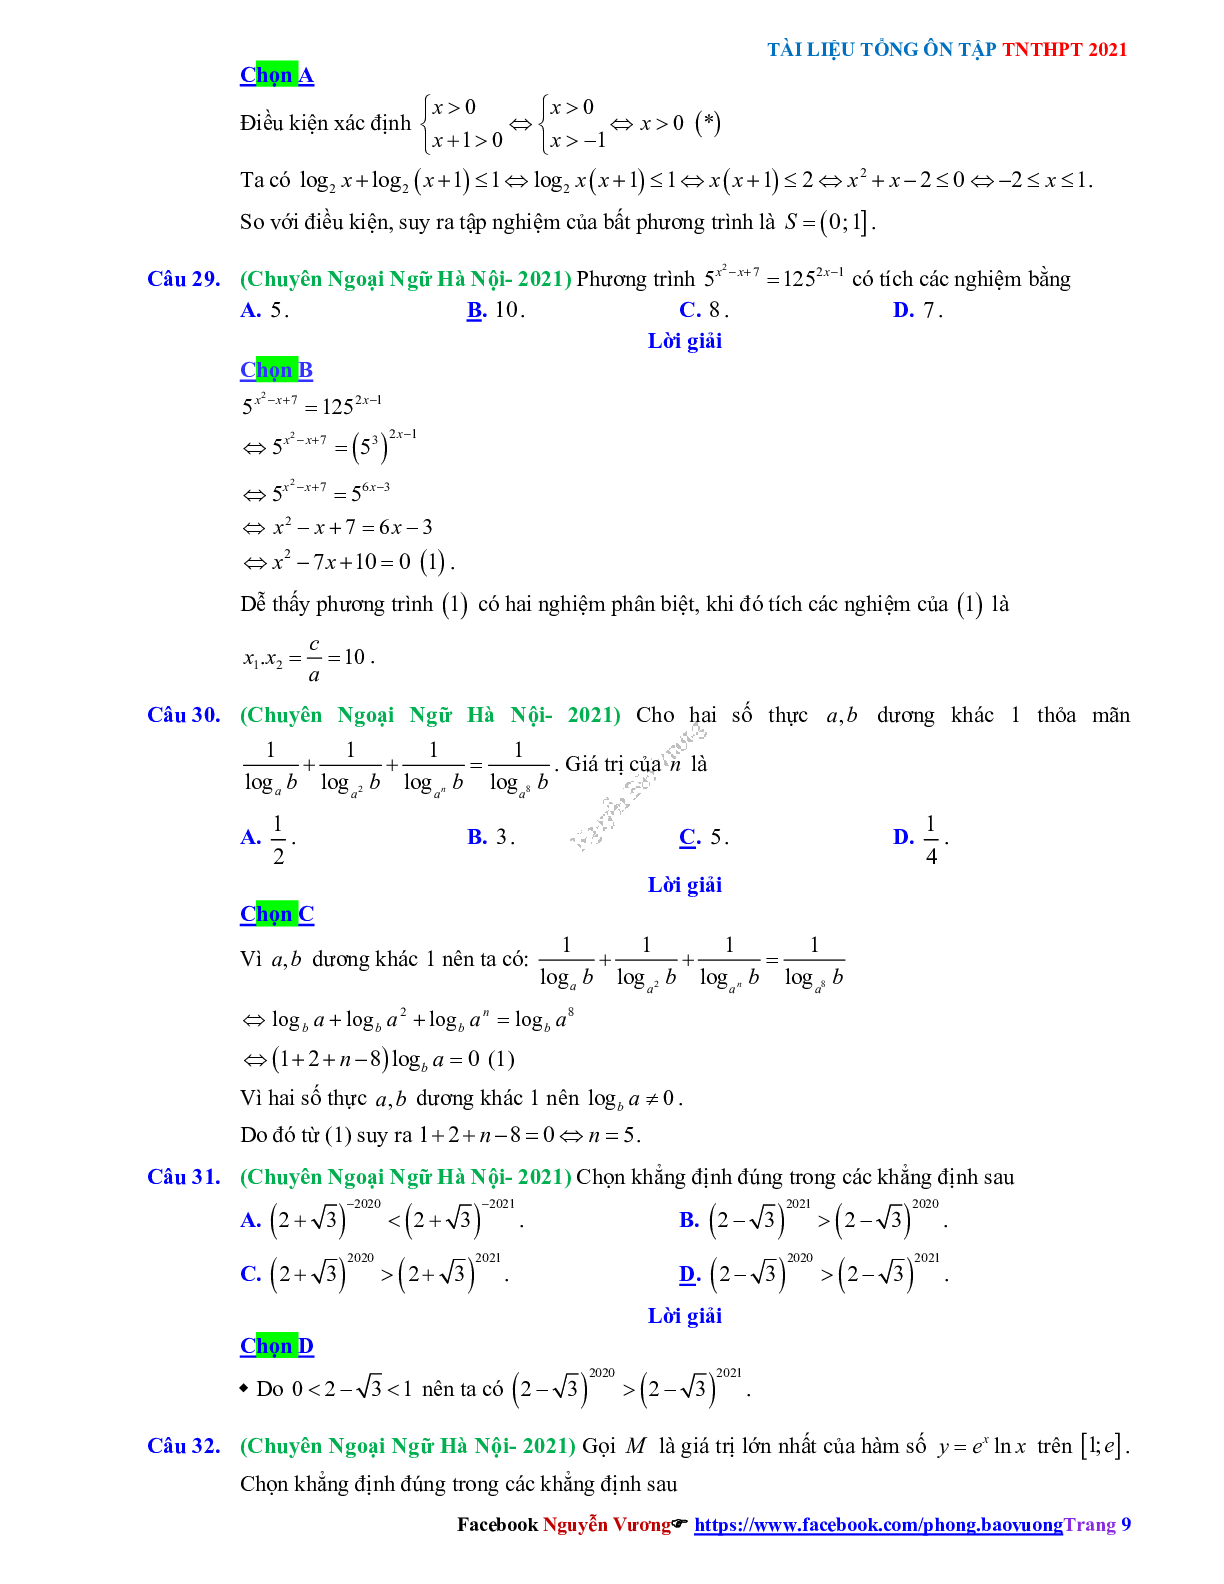 Trắc nghiệm Ôn thi THPT QG Toán 12: Đáp án mũ - lũy thừa - logarit mức độ thông hiểu (trang 9)